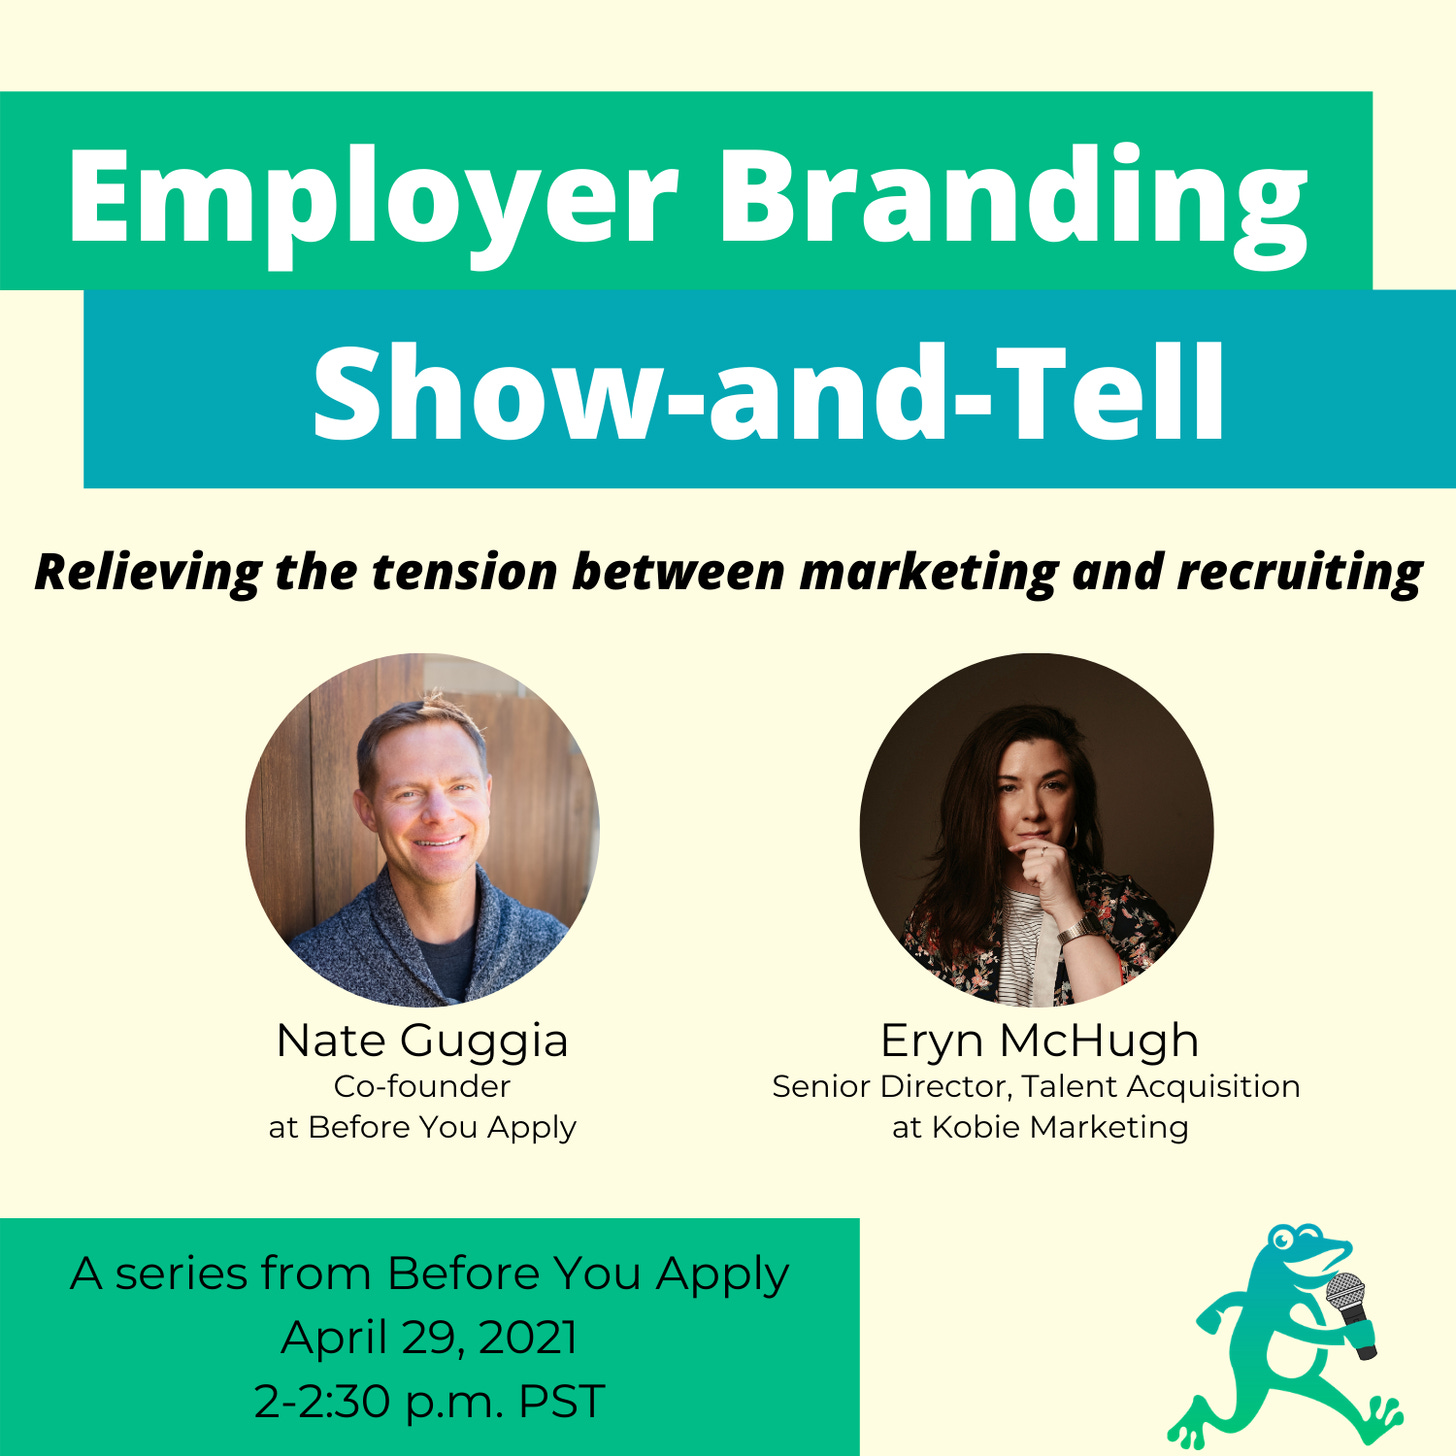 Register for Employer Branding Show-and-Tell